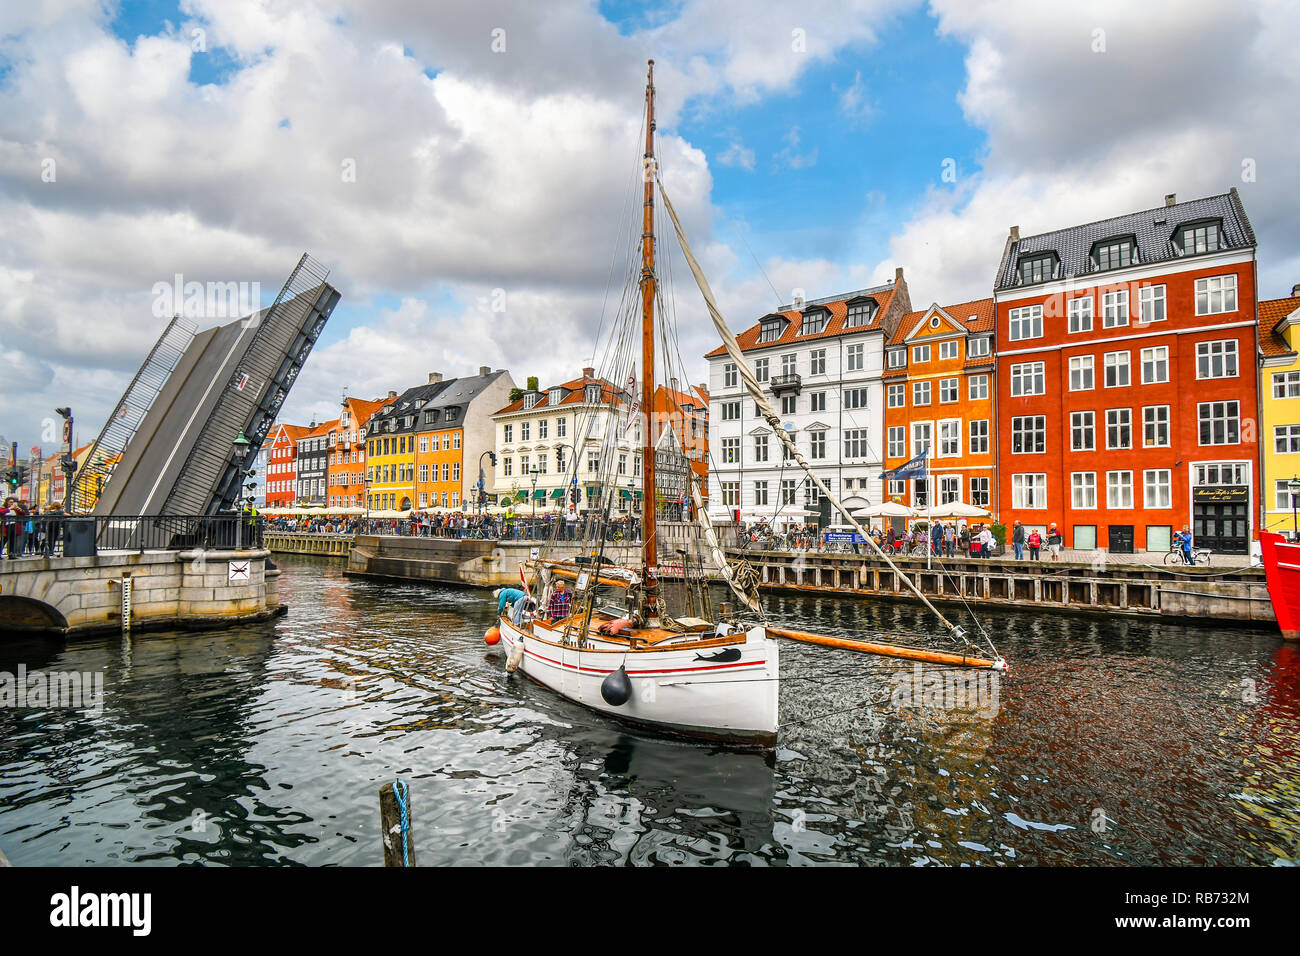 Der nyhavn Brücke öffnet ein kleines Segelboot durch den Kanal in der Waterfront Touristengebiet von Nyhavn in Kopenhagen, Dänemark. Stockfoto